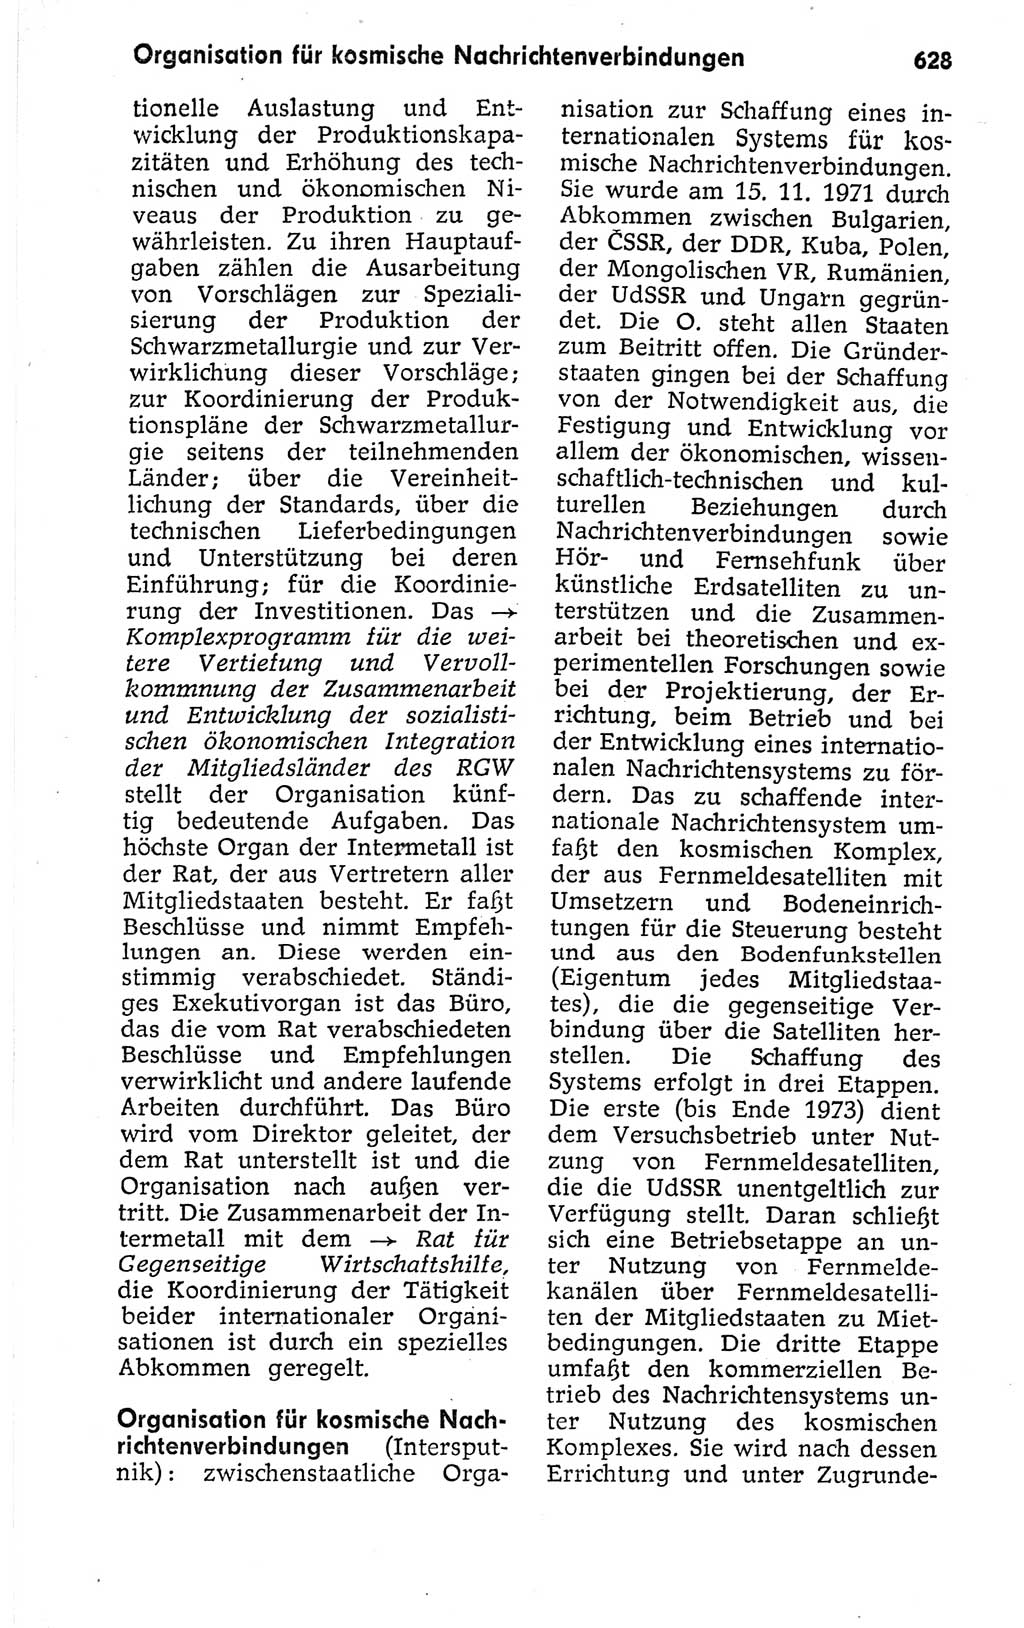 Kleines politisches Wörterbuch [Deutsche Demokratische Republik (DDR)] 1973, Seite 628 (Kl. pol. Wb. DDR 1973, S. 628)